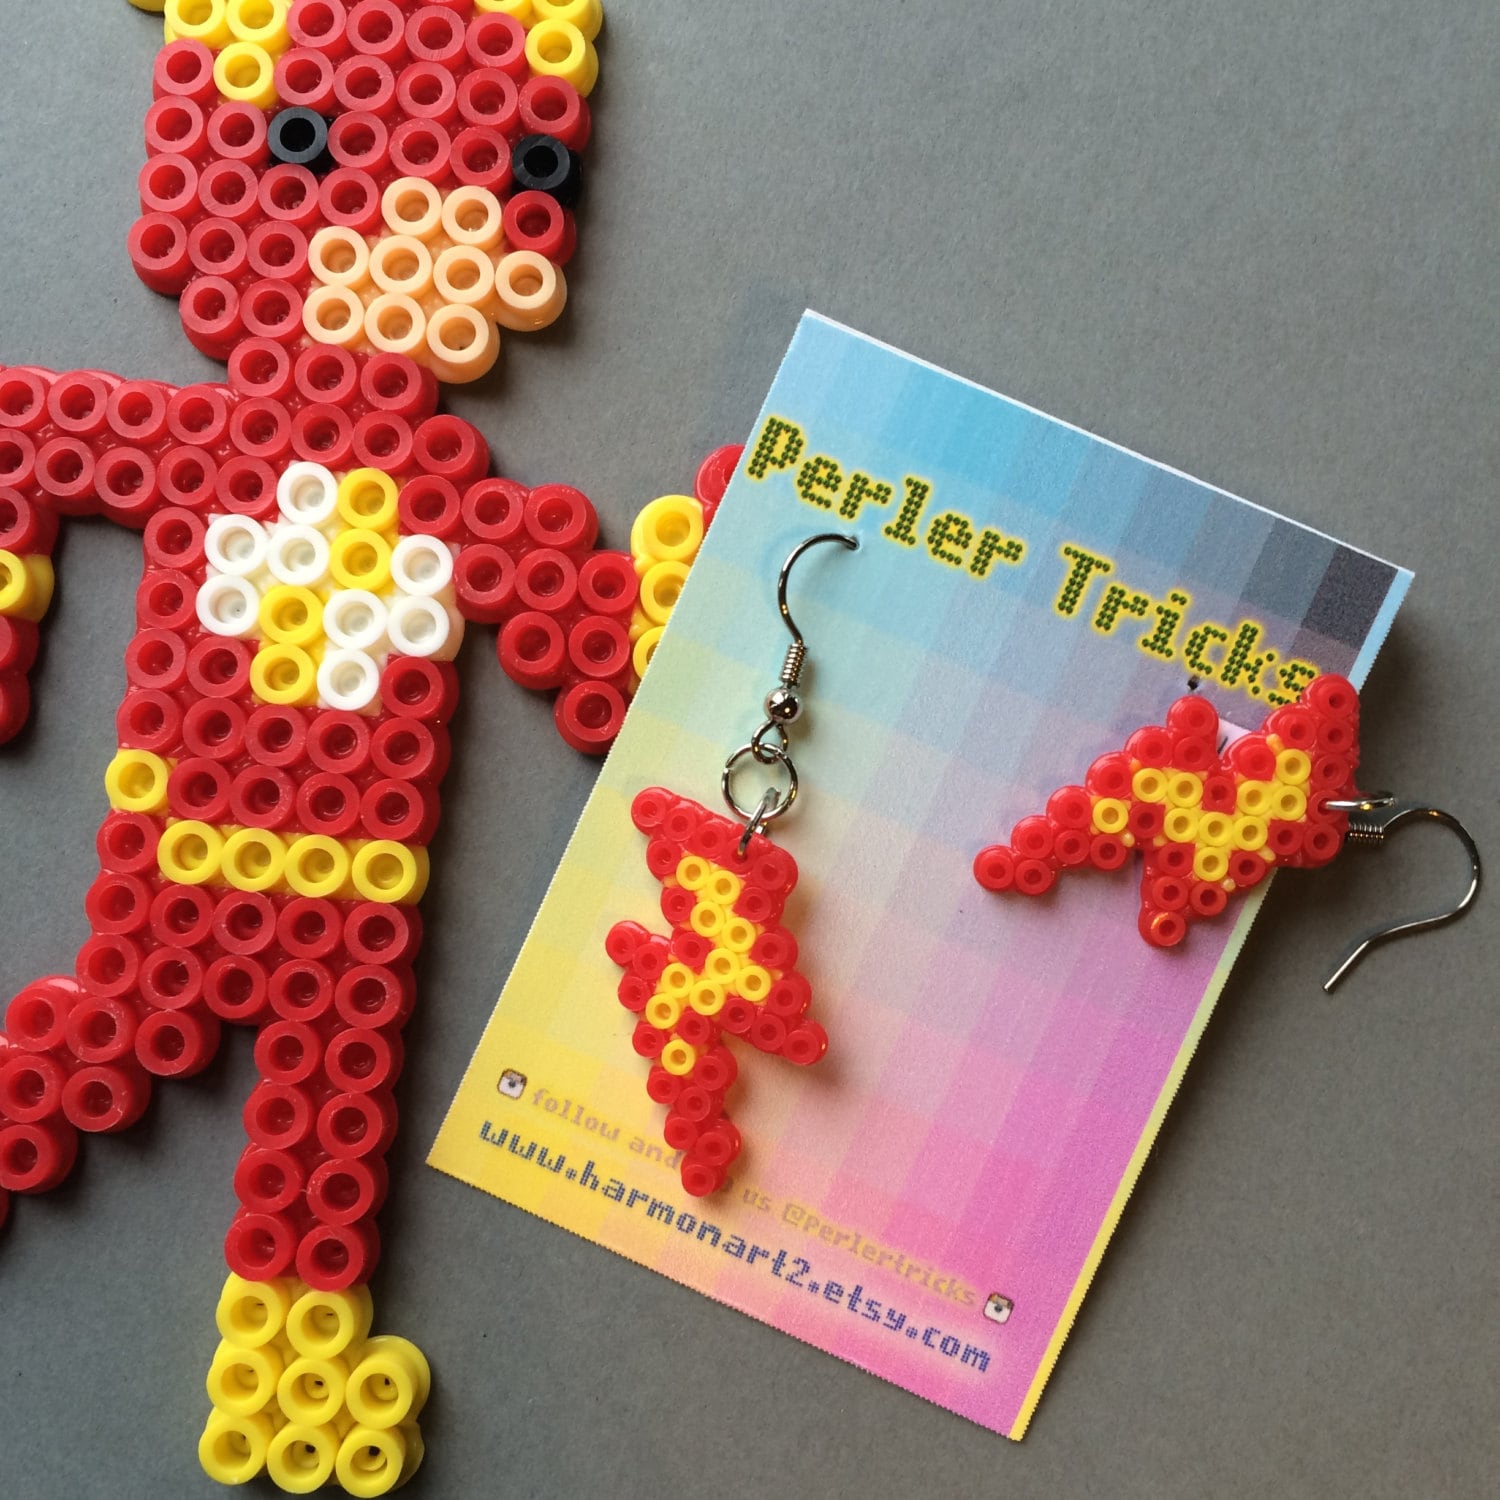 1 Pcs Funny Durable Children Kids Tools Tweezers Kids' Craft for Perler Bead  New Design